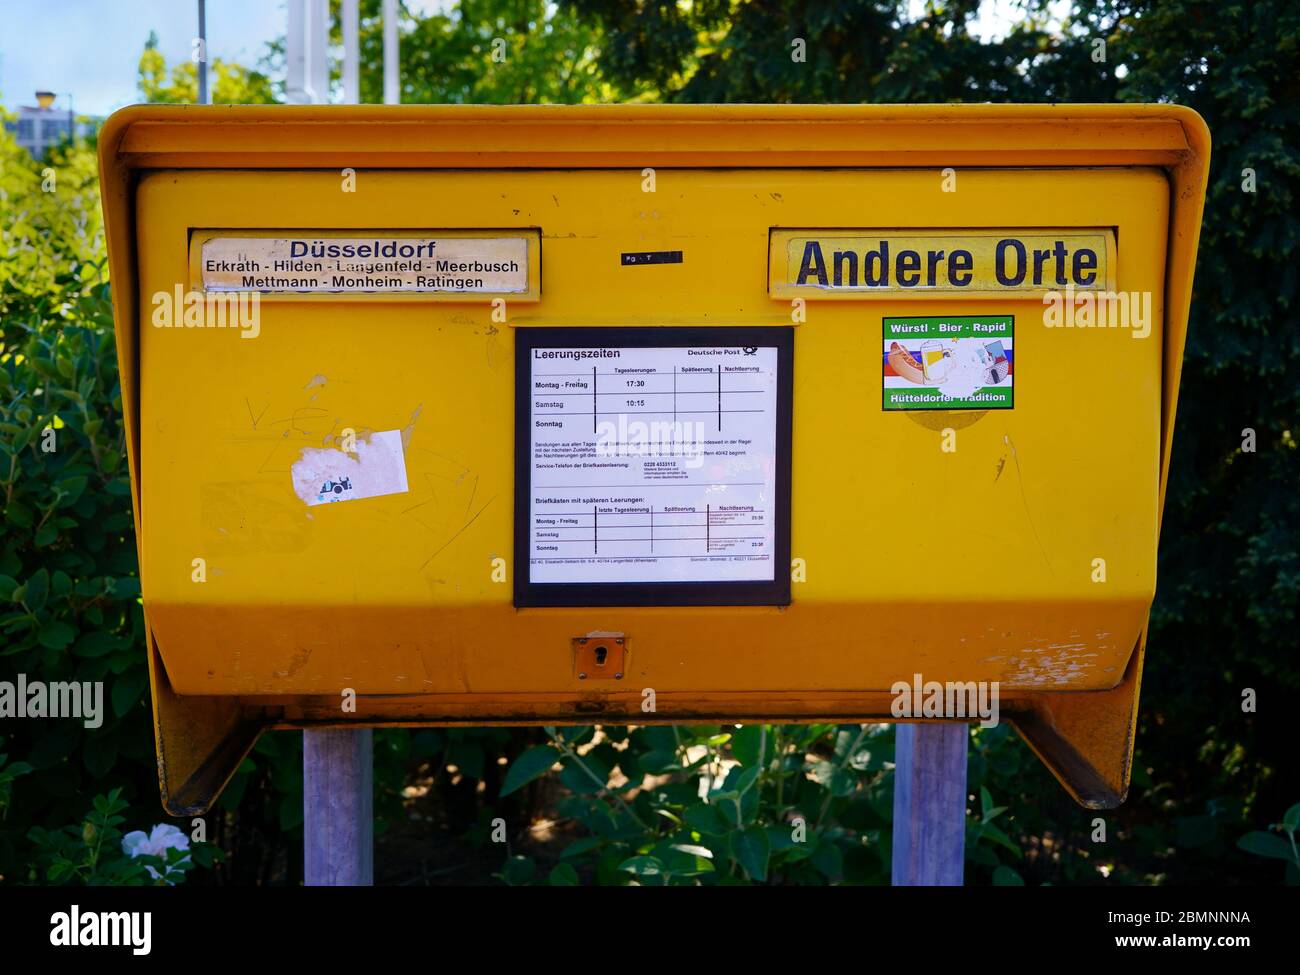 Gelbe Briefkasten aus Stahlblech. Dieses ist für die Region Düsseldorf. 'Andere Orte' bedeutet 'andere Ziele'. Stockfoto